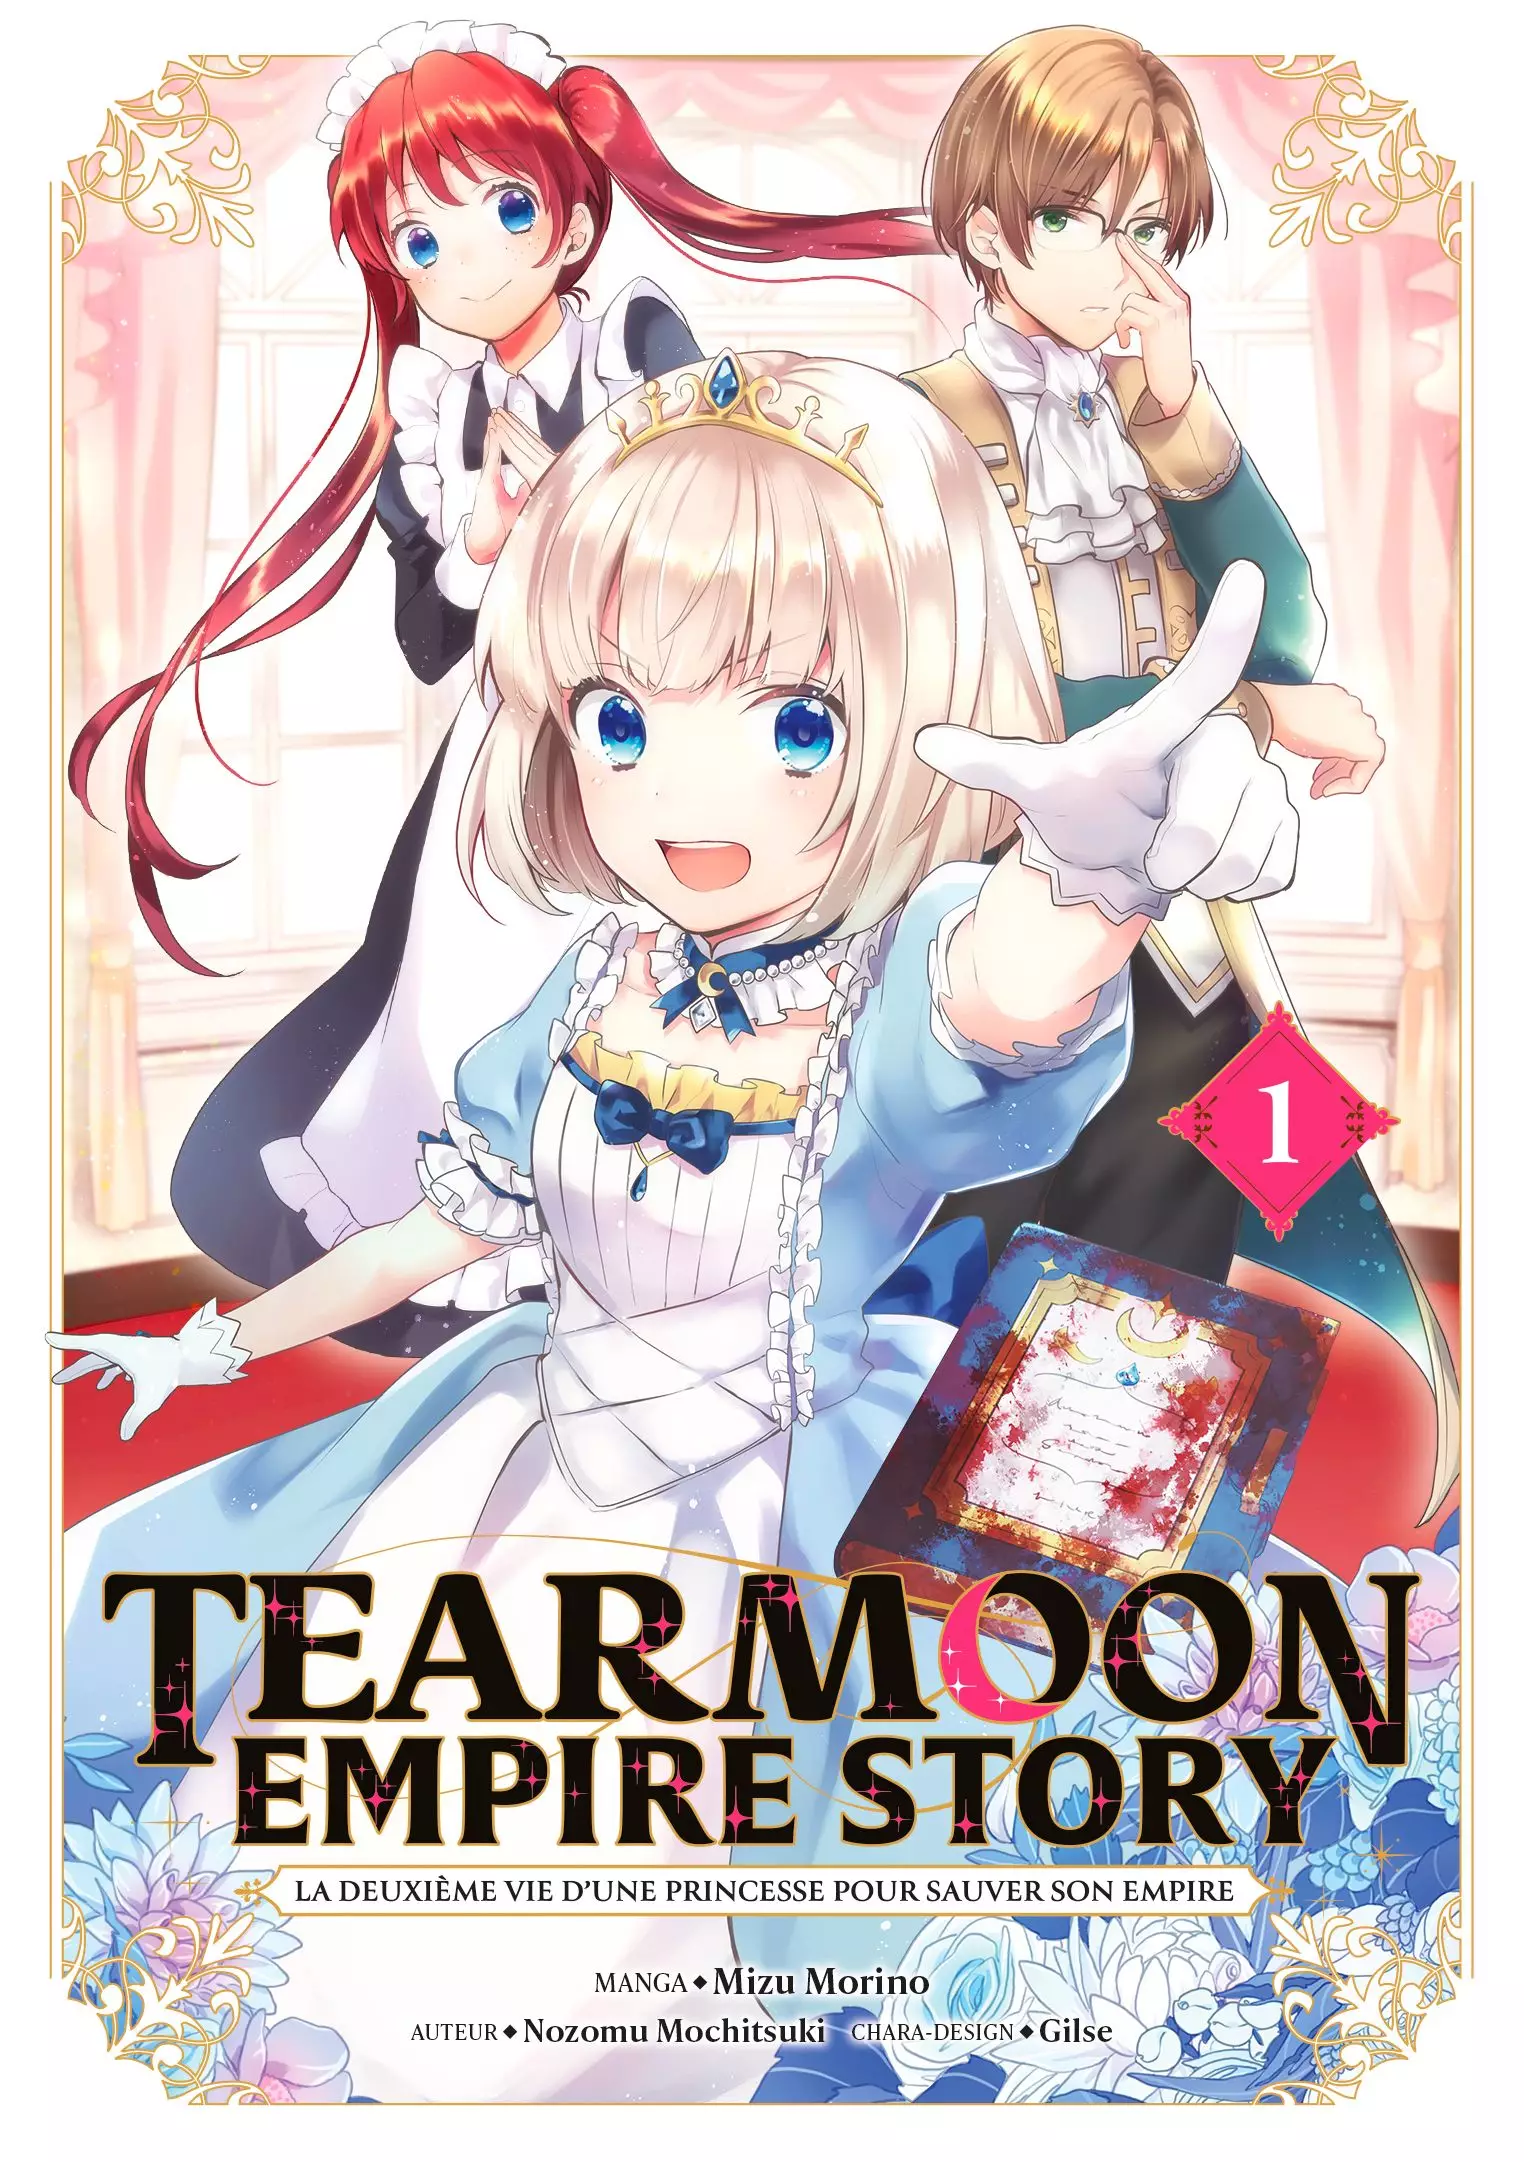 Tearmoon Empire Story Tearmoon_Empire_Story_1_meian